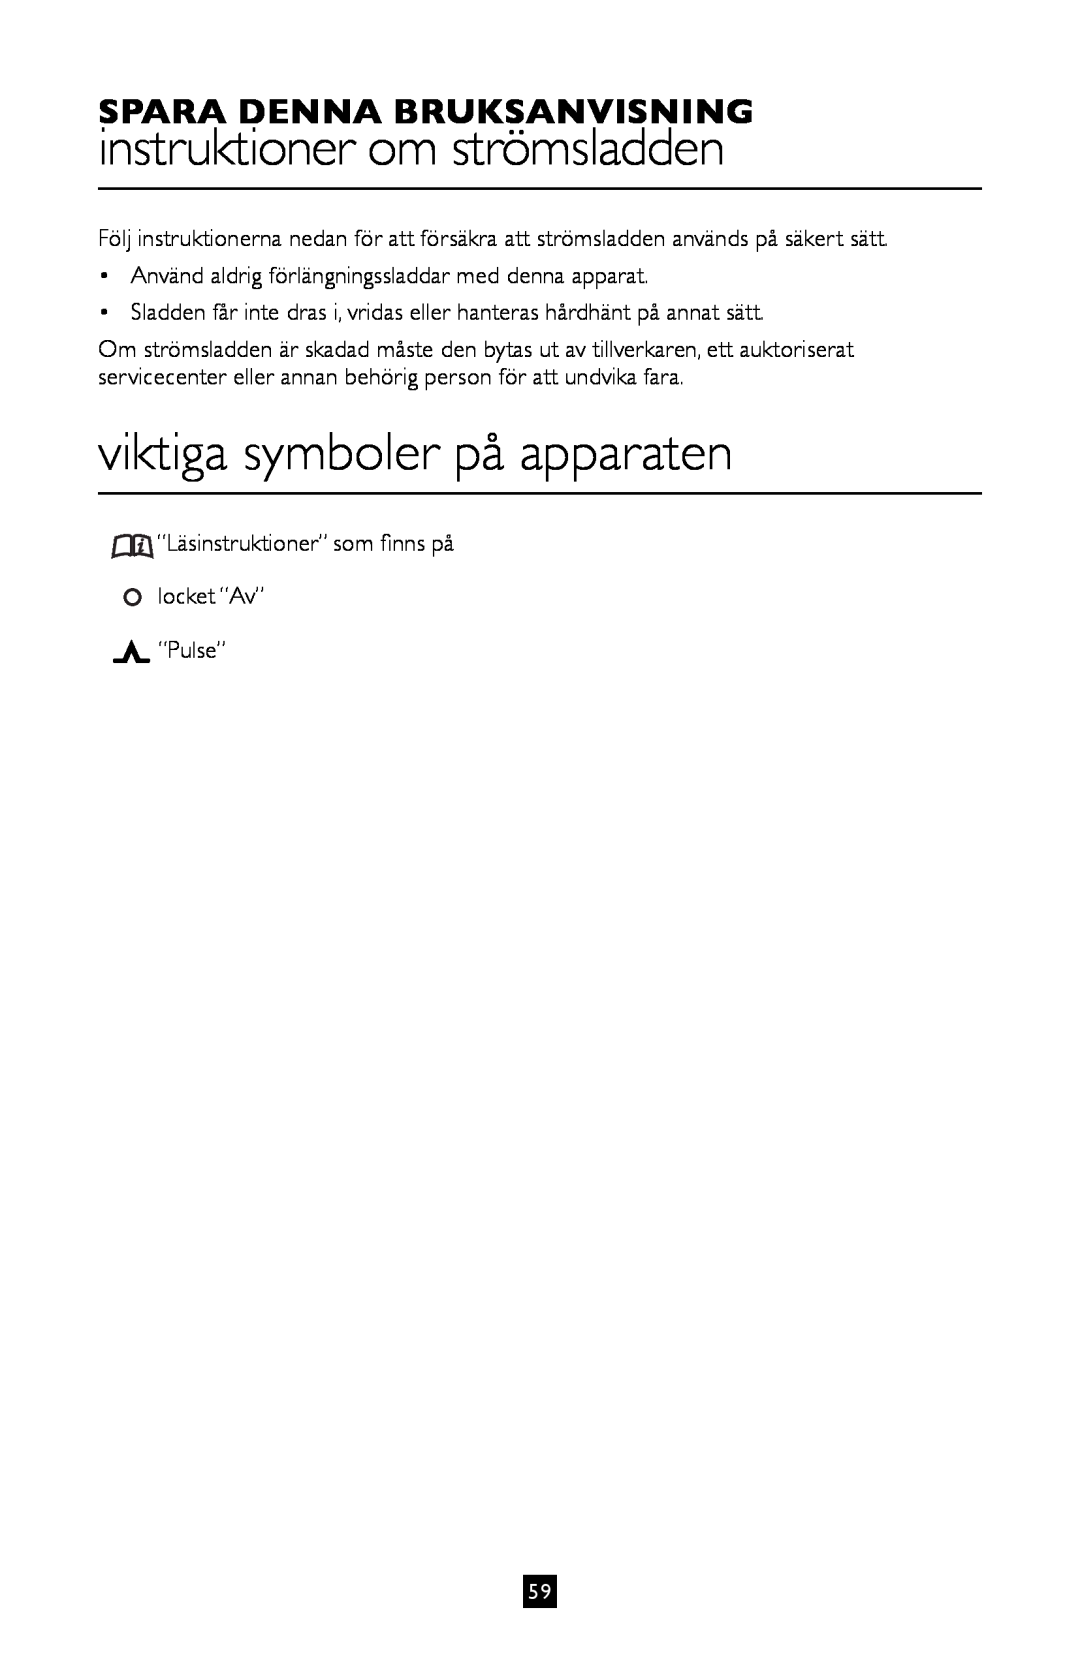 Villaware BLVLLAZ05H instruktioner om strömsladden, viktiga symboler på apparaten, Spara Denna Bruksanvisning 